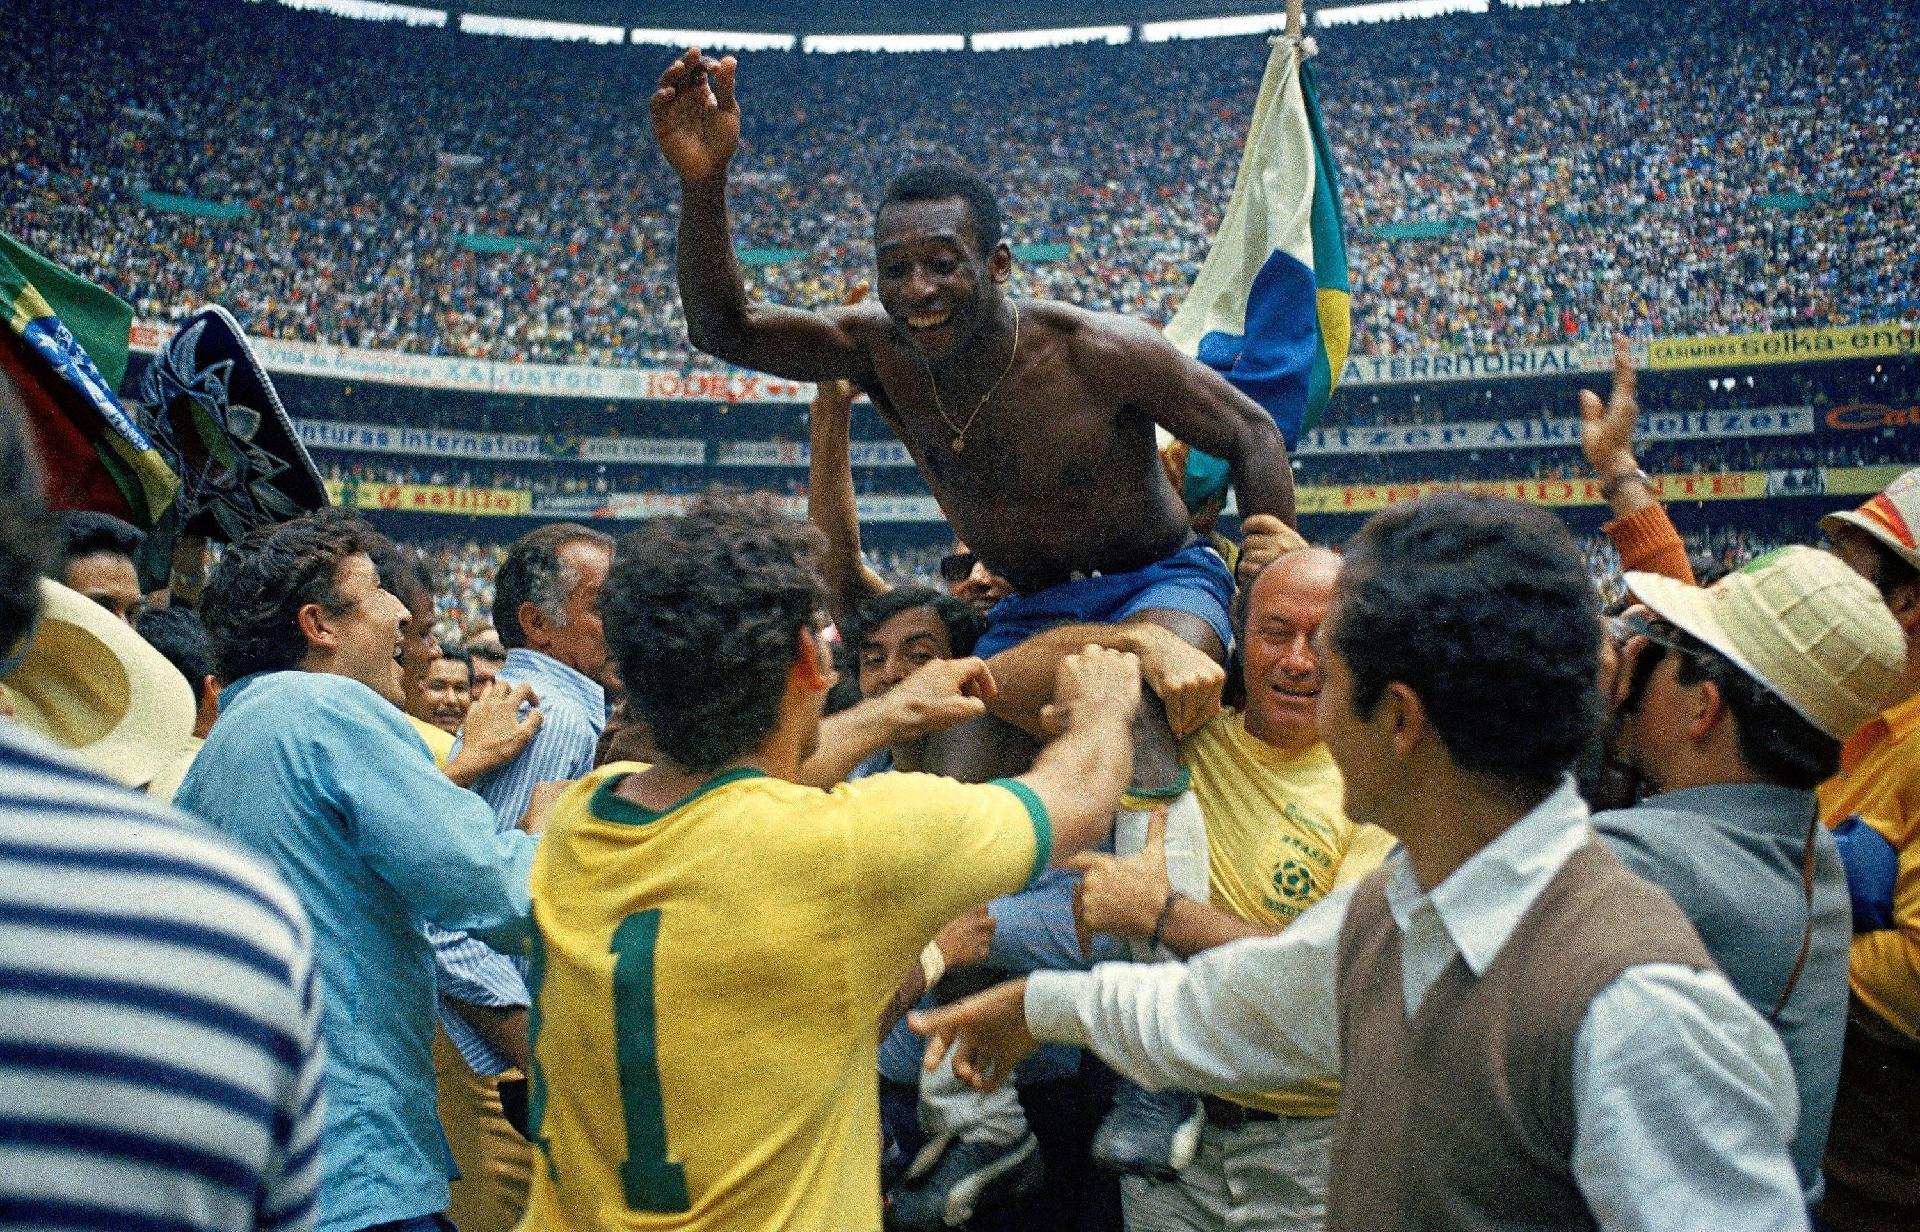 Pelé celebra vitória do Brasil após a seleção canarinha conquistar a Copa do Mundo de 1970, disputada no México. O Brasil sagrou-se campeão após vencer a Itália por 4 a 1. - Alessandro Sabattini/Getty Images